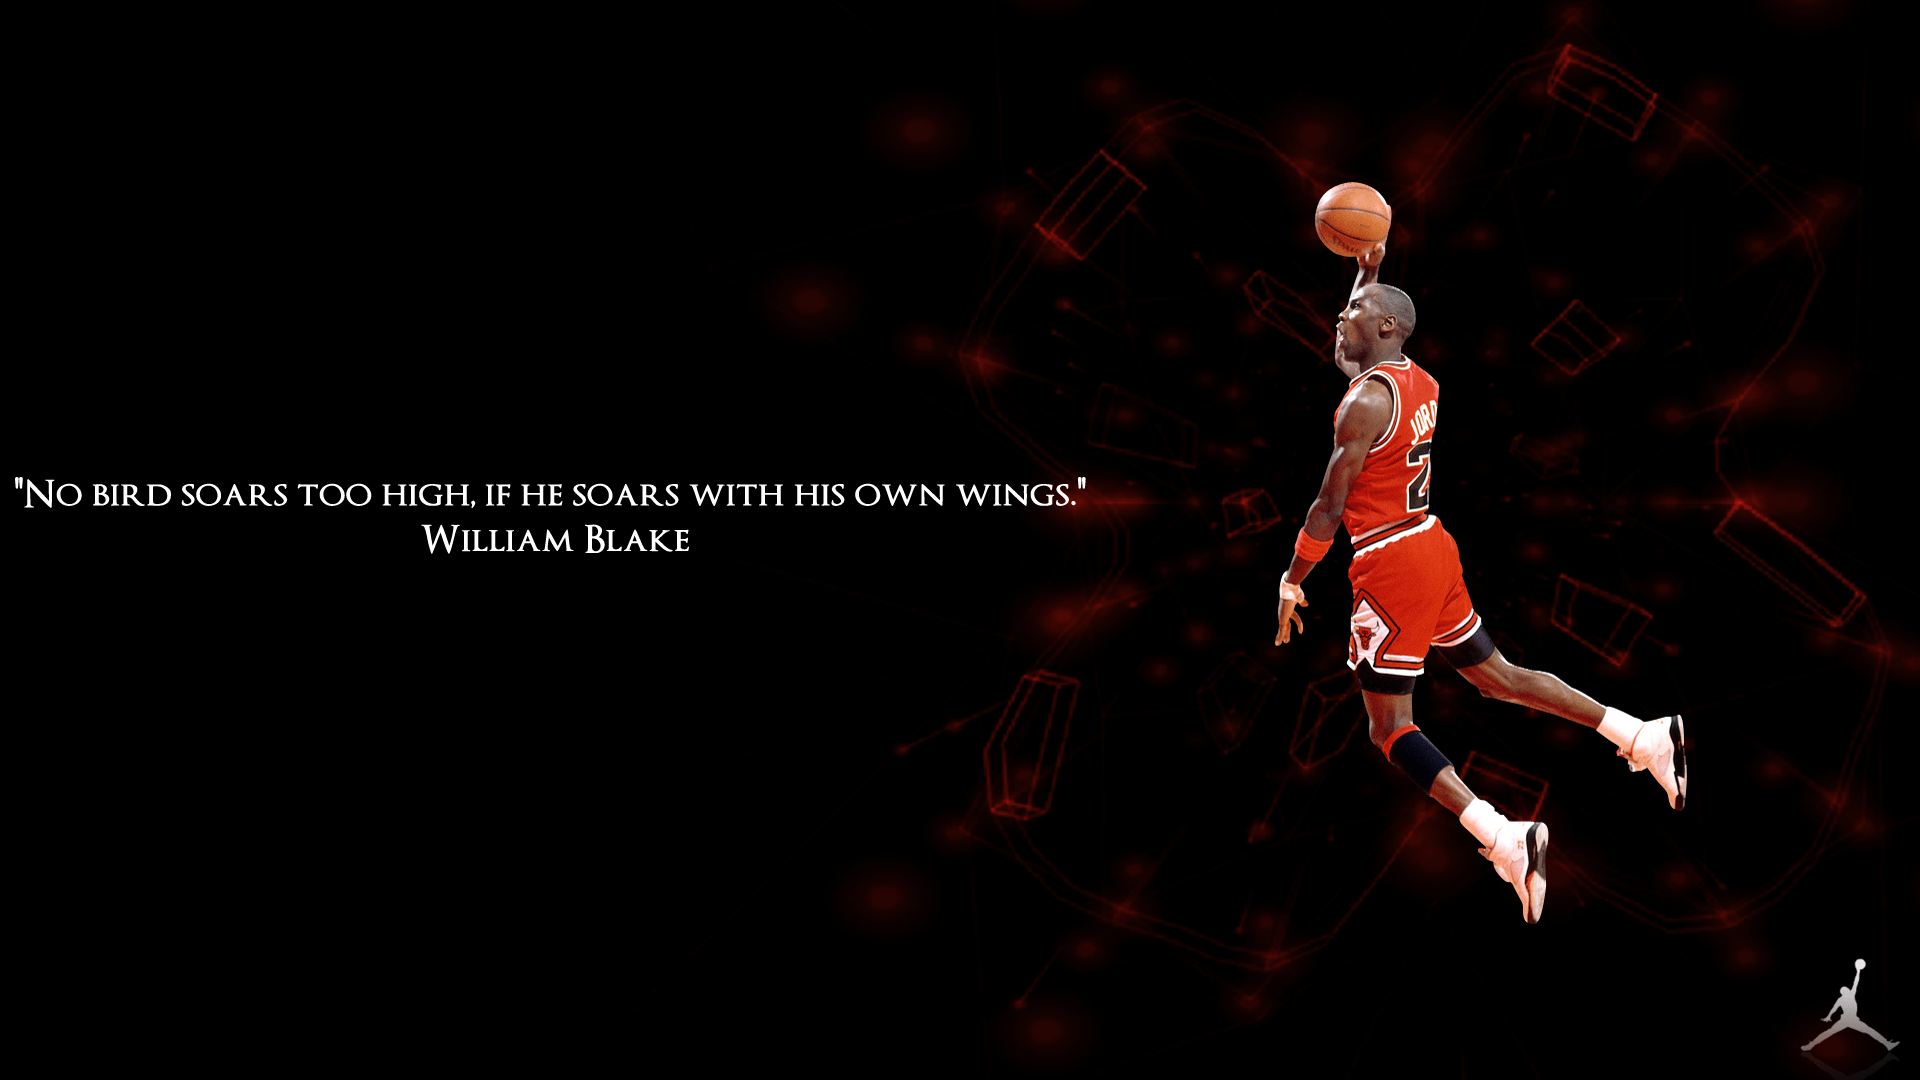 Michael Jordan Quote Wallpapers 1920x1080